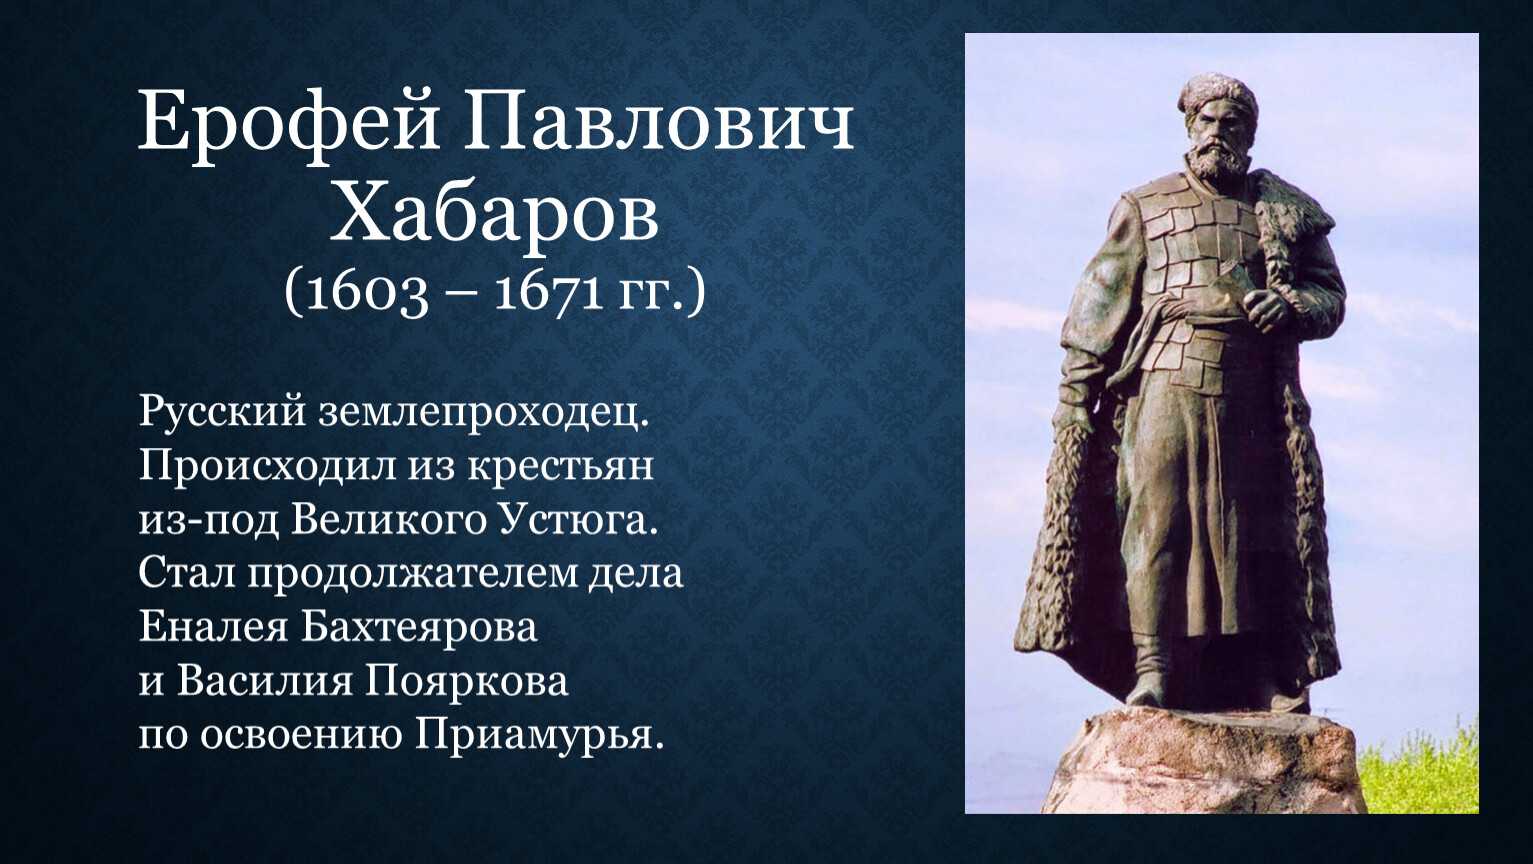 Хабаров ерофей павлович, русский землепроходец